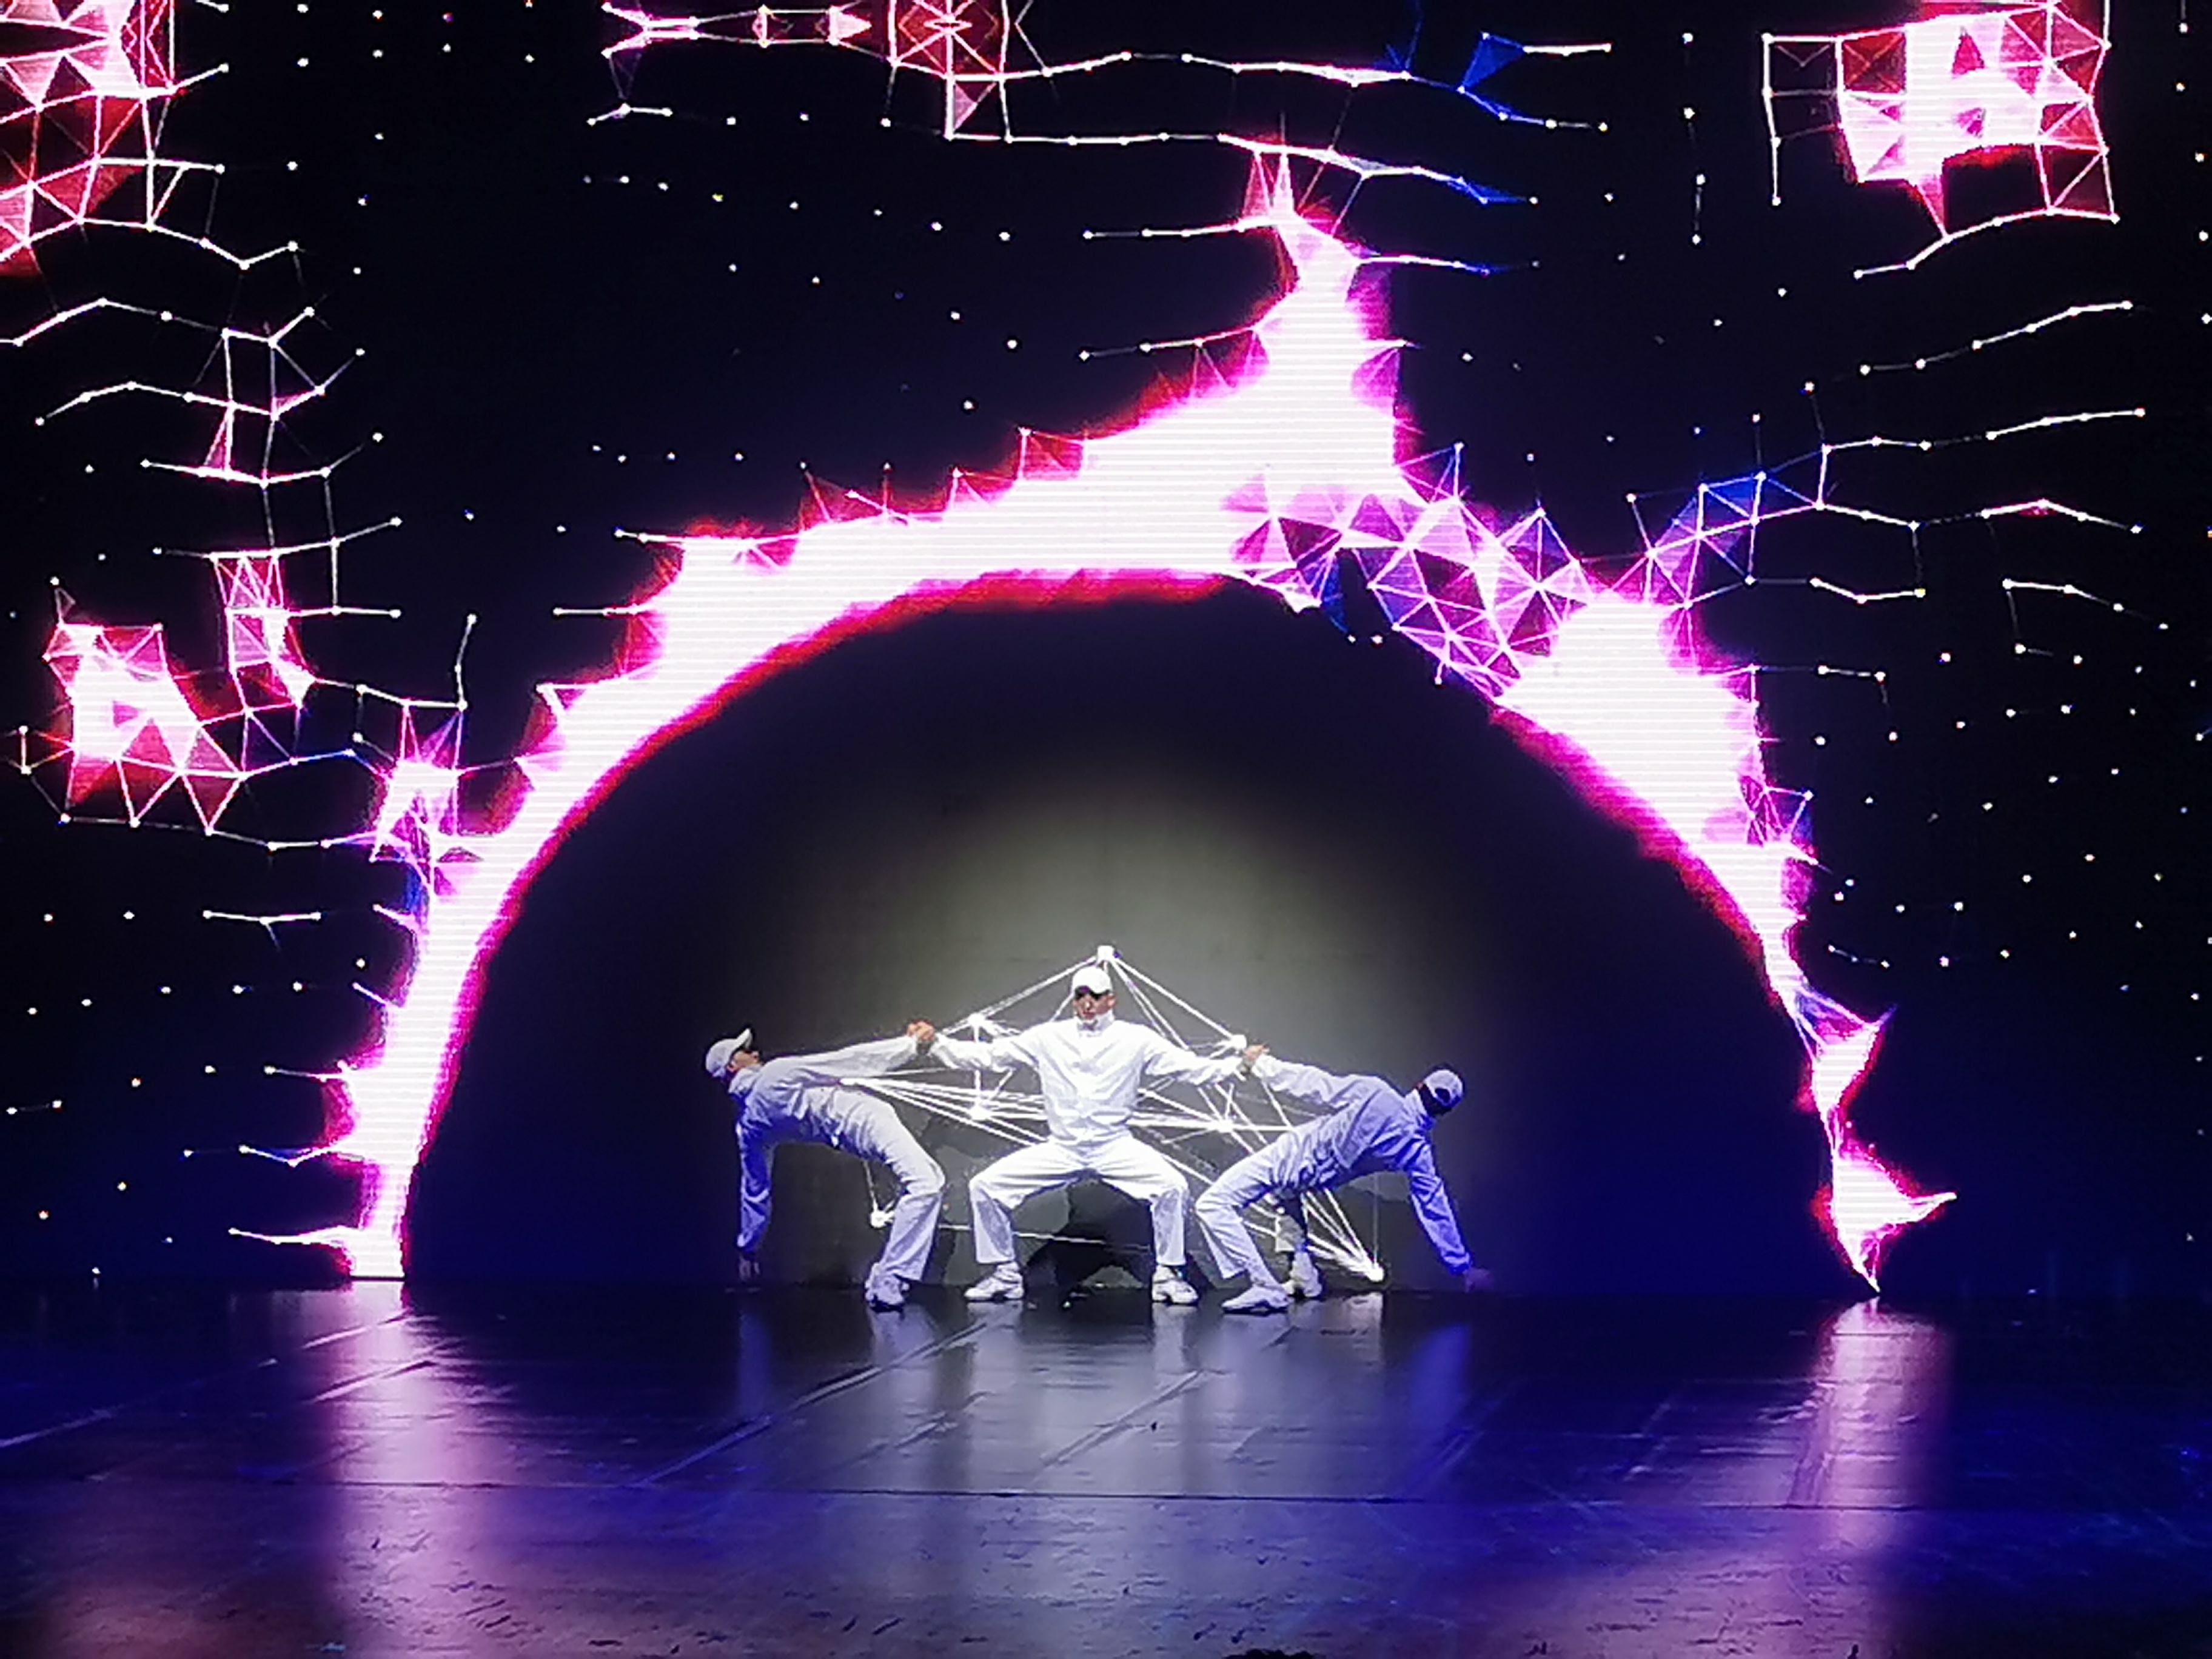 配合表演者呈现出魔幻效果的LED大屏幕，让观众有超乎想象的视听飨宴。-杨琇媖摄-